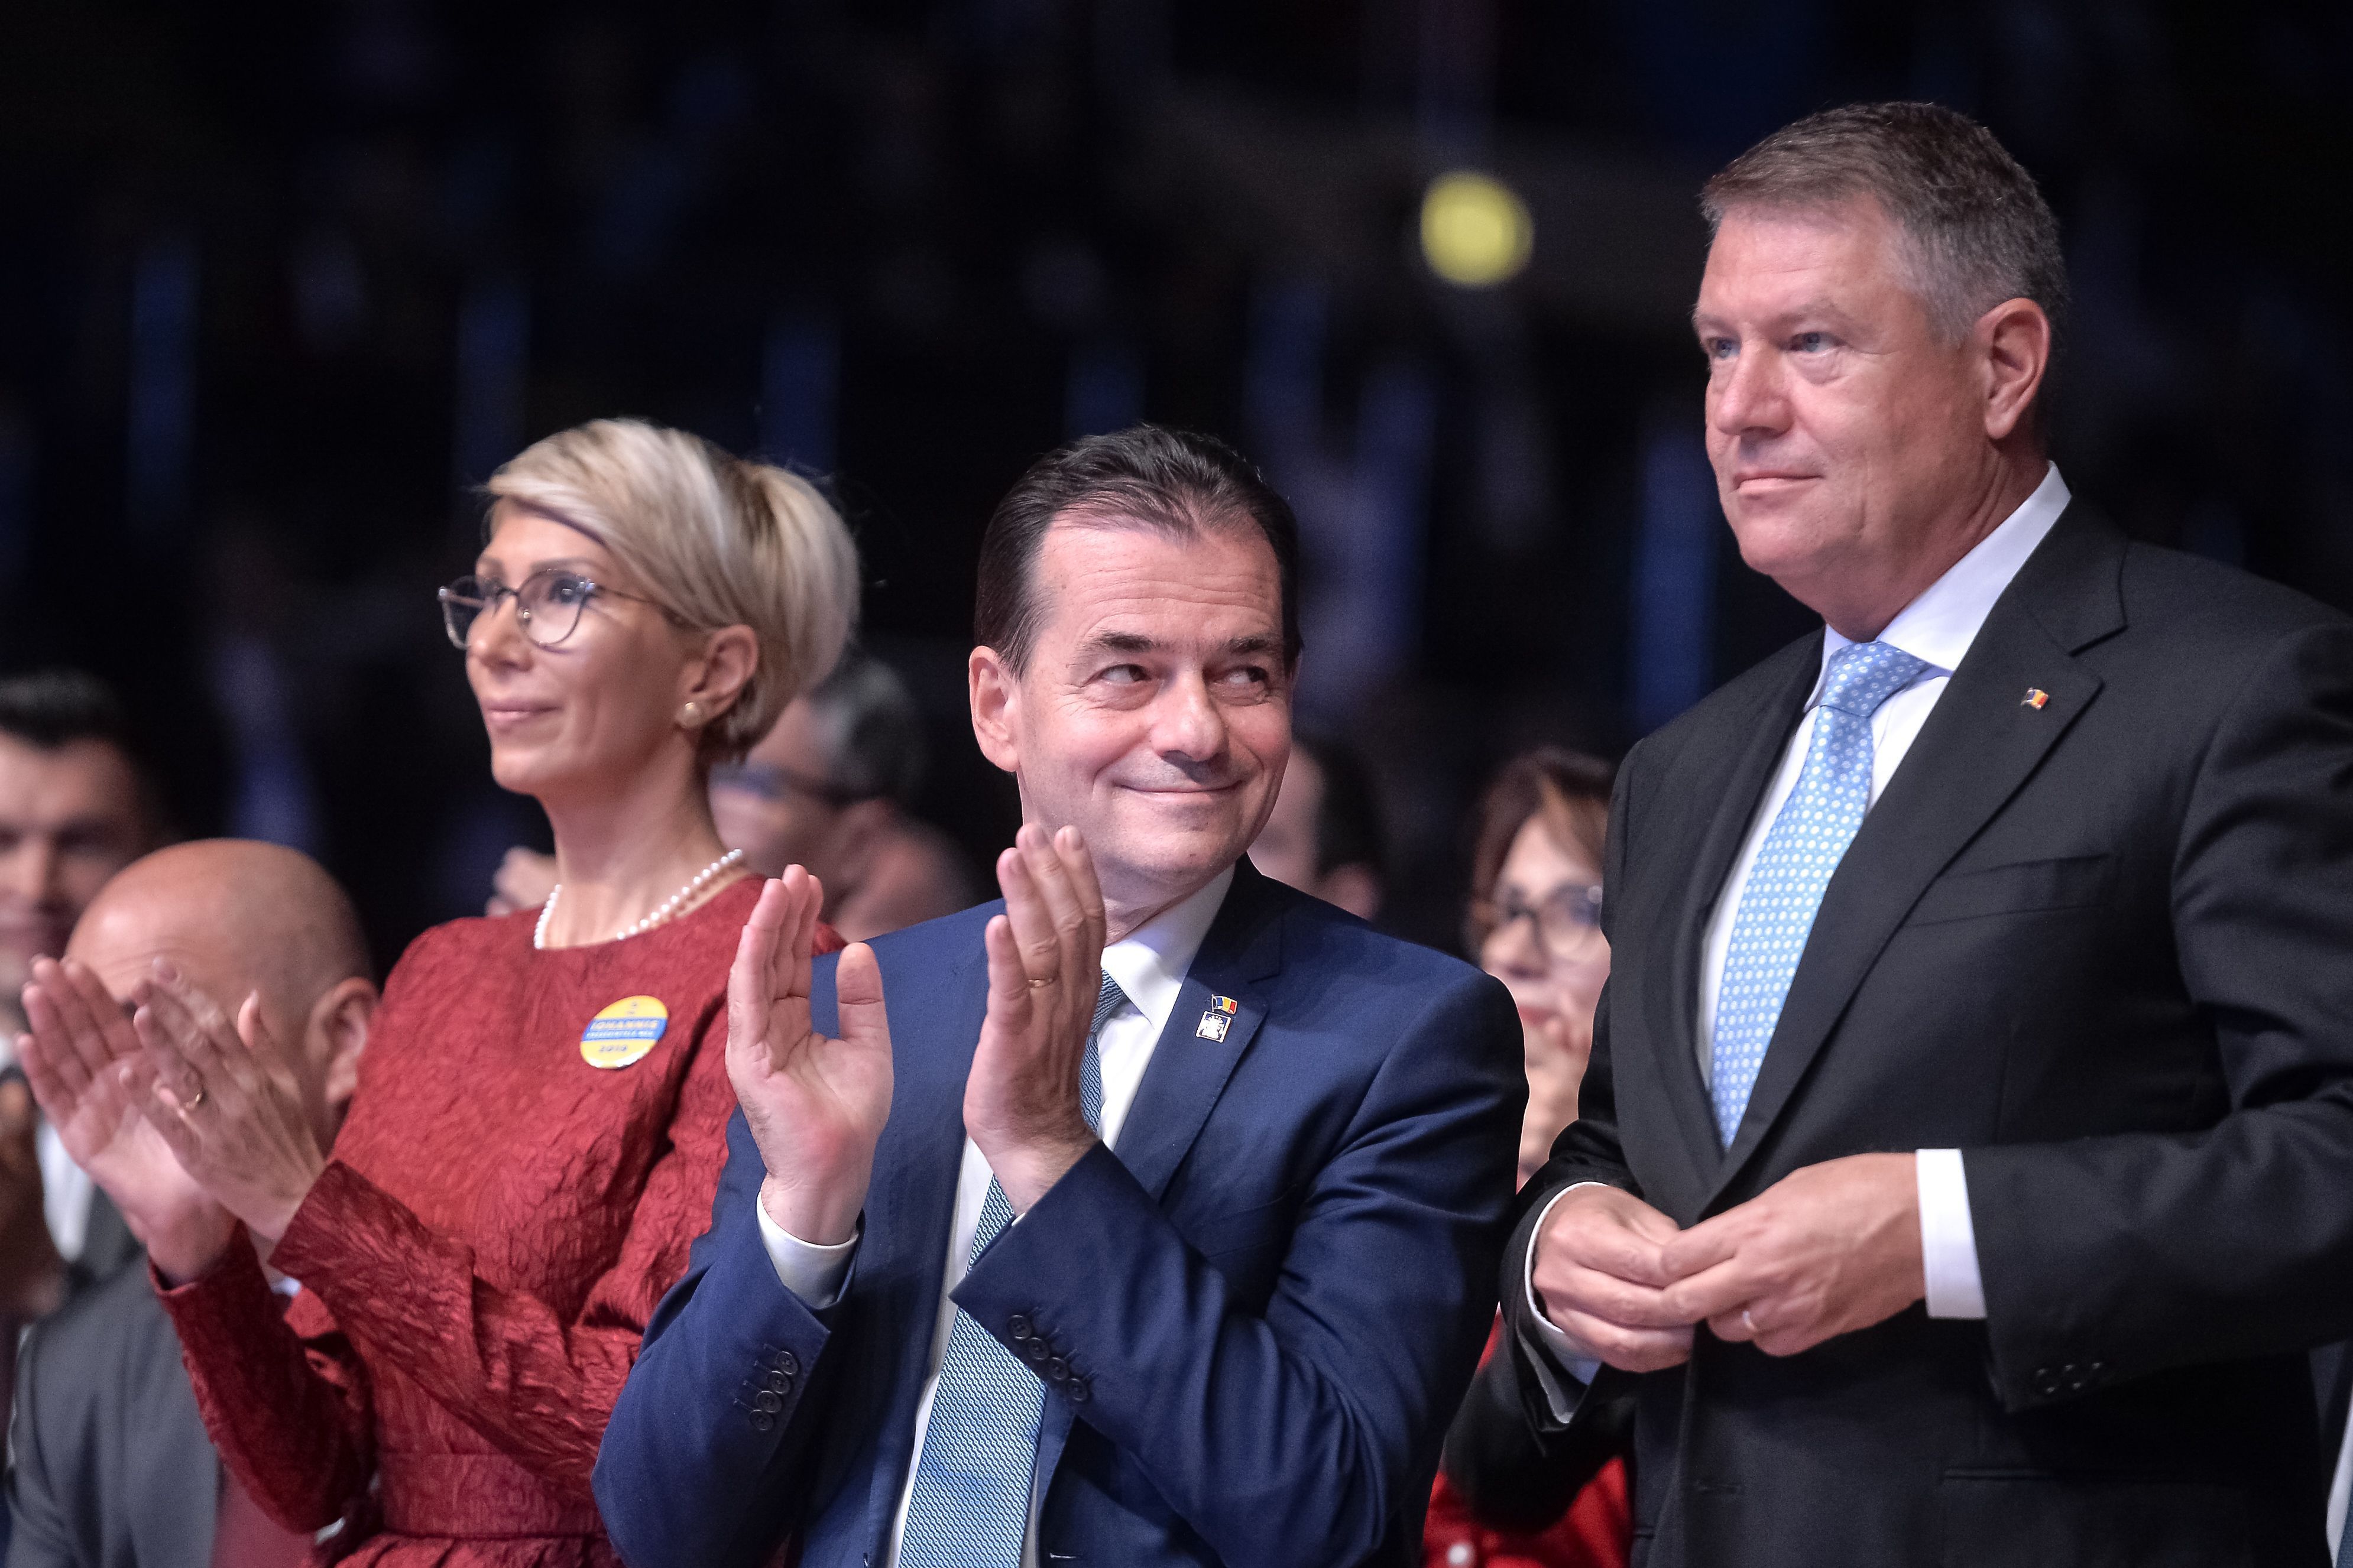 După ce Cîţu şi-a depus mandatul, preşedintele Iohannis îl desemnează premier tot pe Ludovic Orban, care în prezent se află în carantină